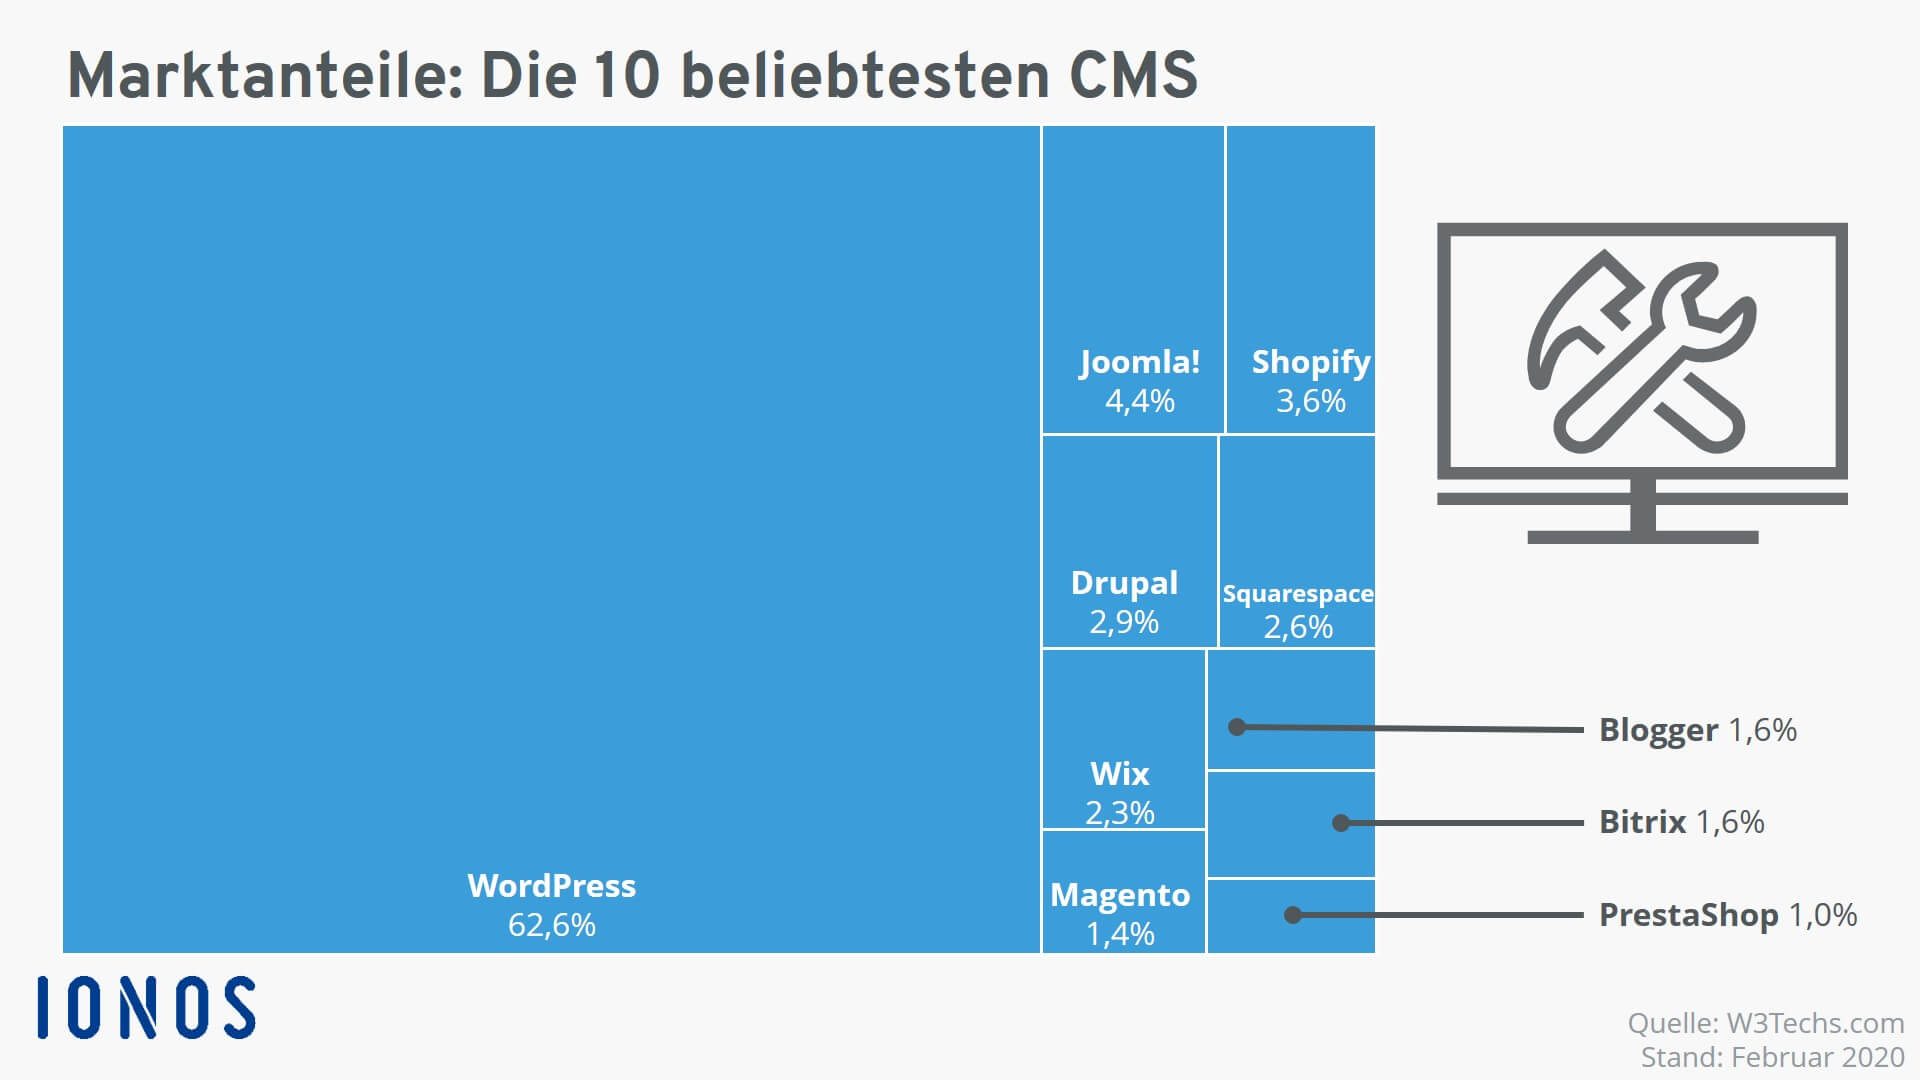 Marktanteile der zehn am weitesten verbreiteten CMS